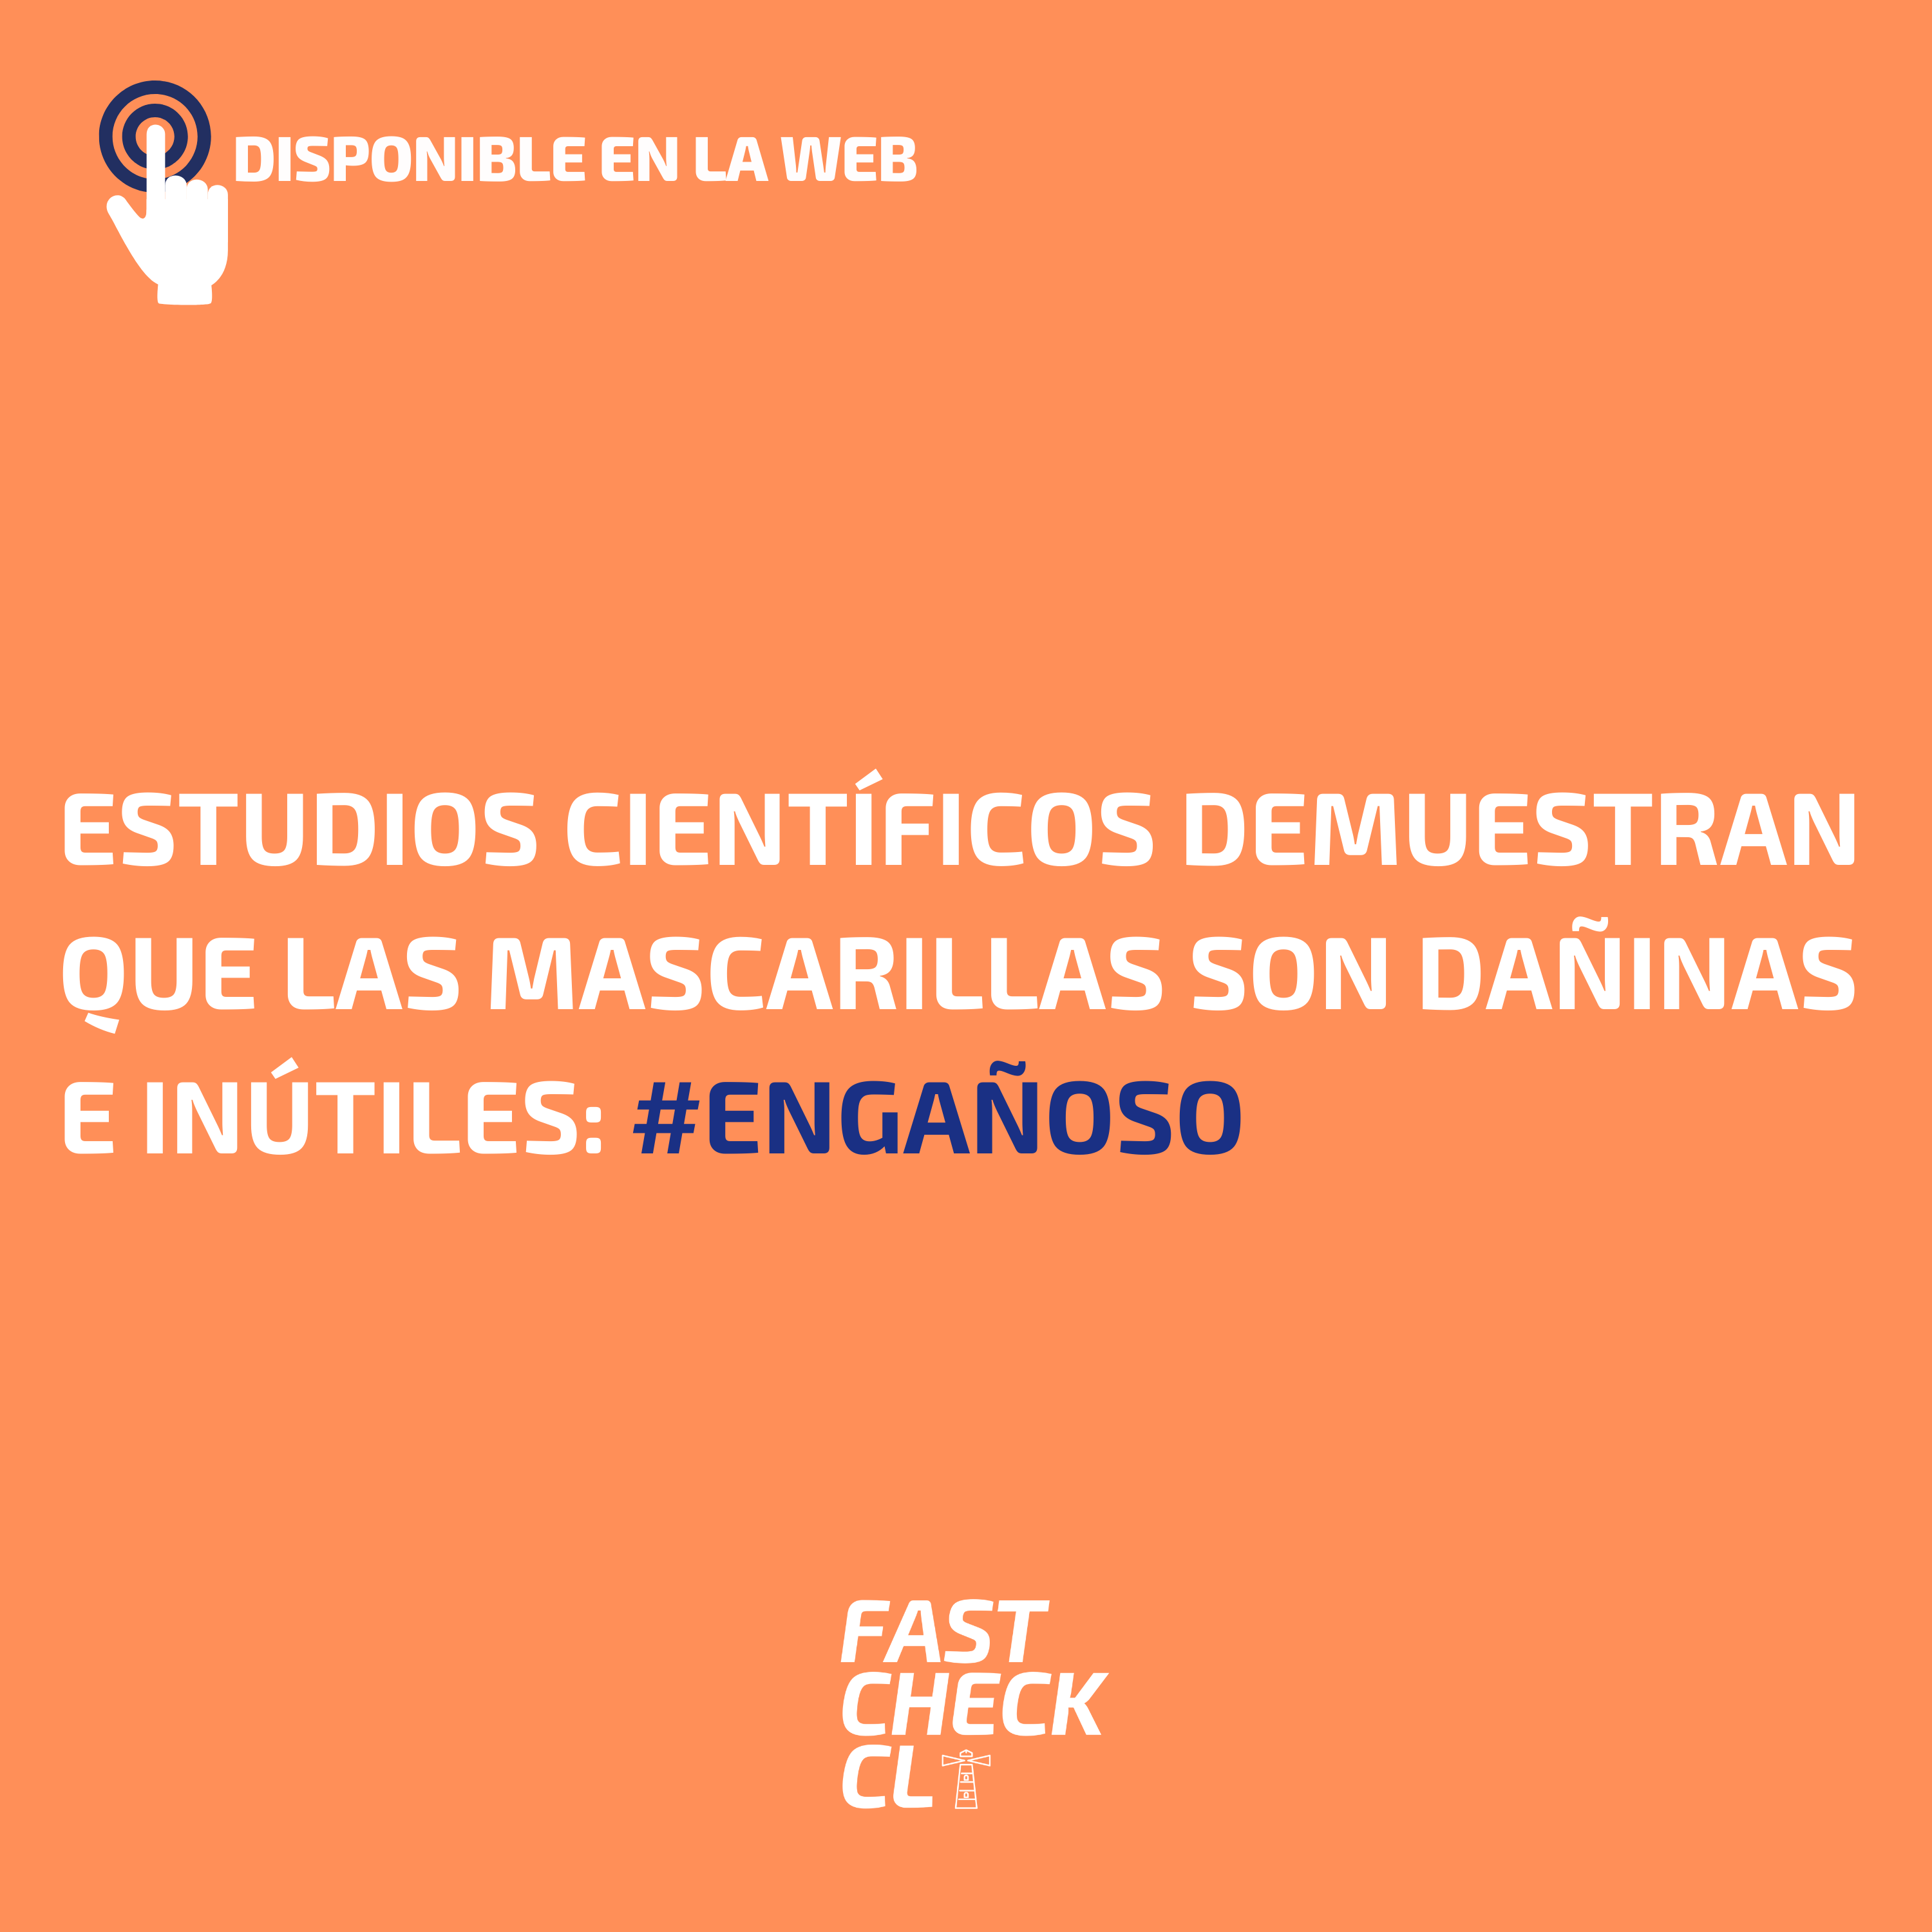 You are currently viewing Estudios científicos demuestran que las mascarillas son dañinas e inútiles: #Engañoso